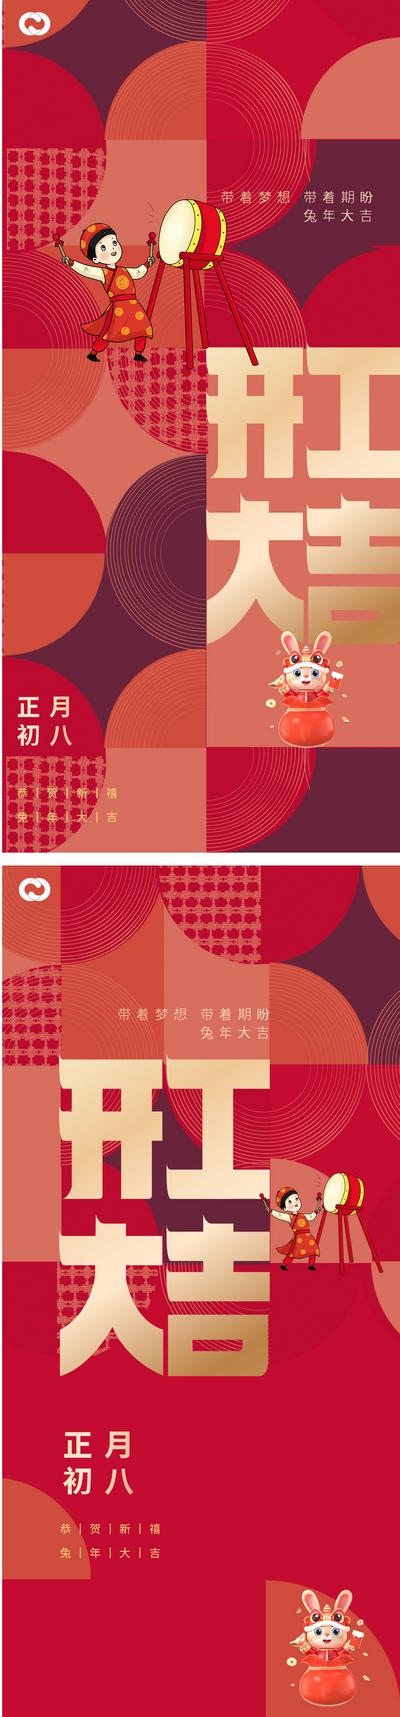 【南门网】海报 中国传统节日 开工大吉 初八 生意兴隆 国潮